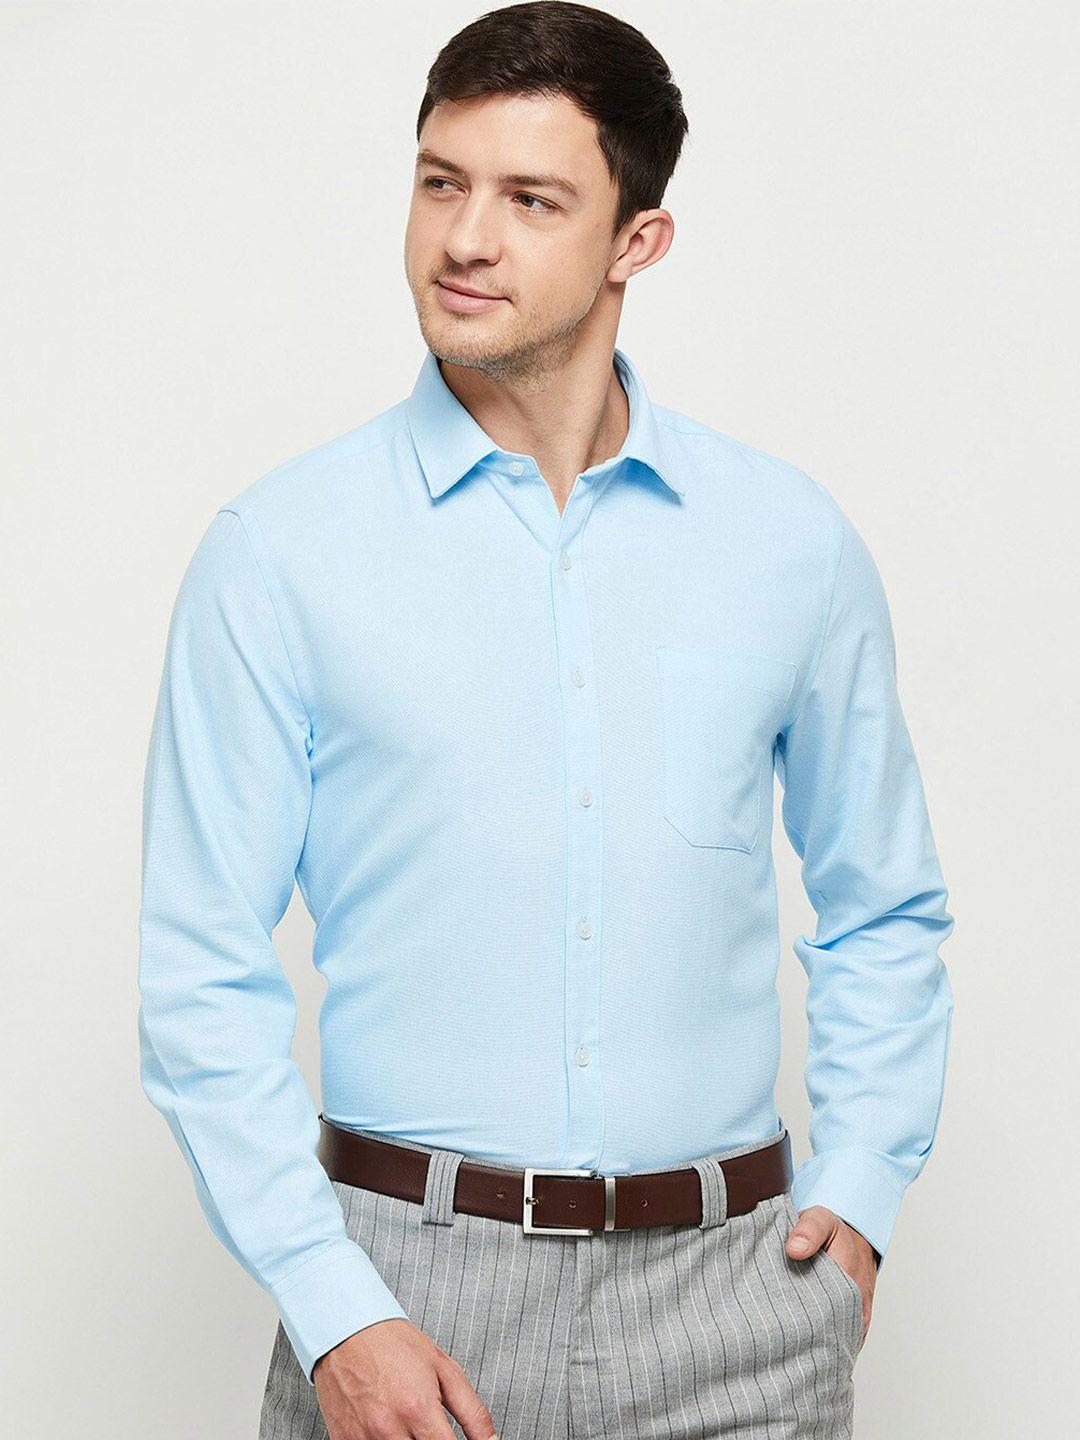 max men blue casual shirt